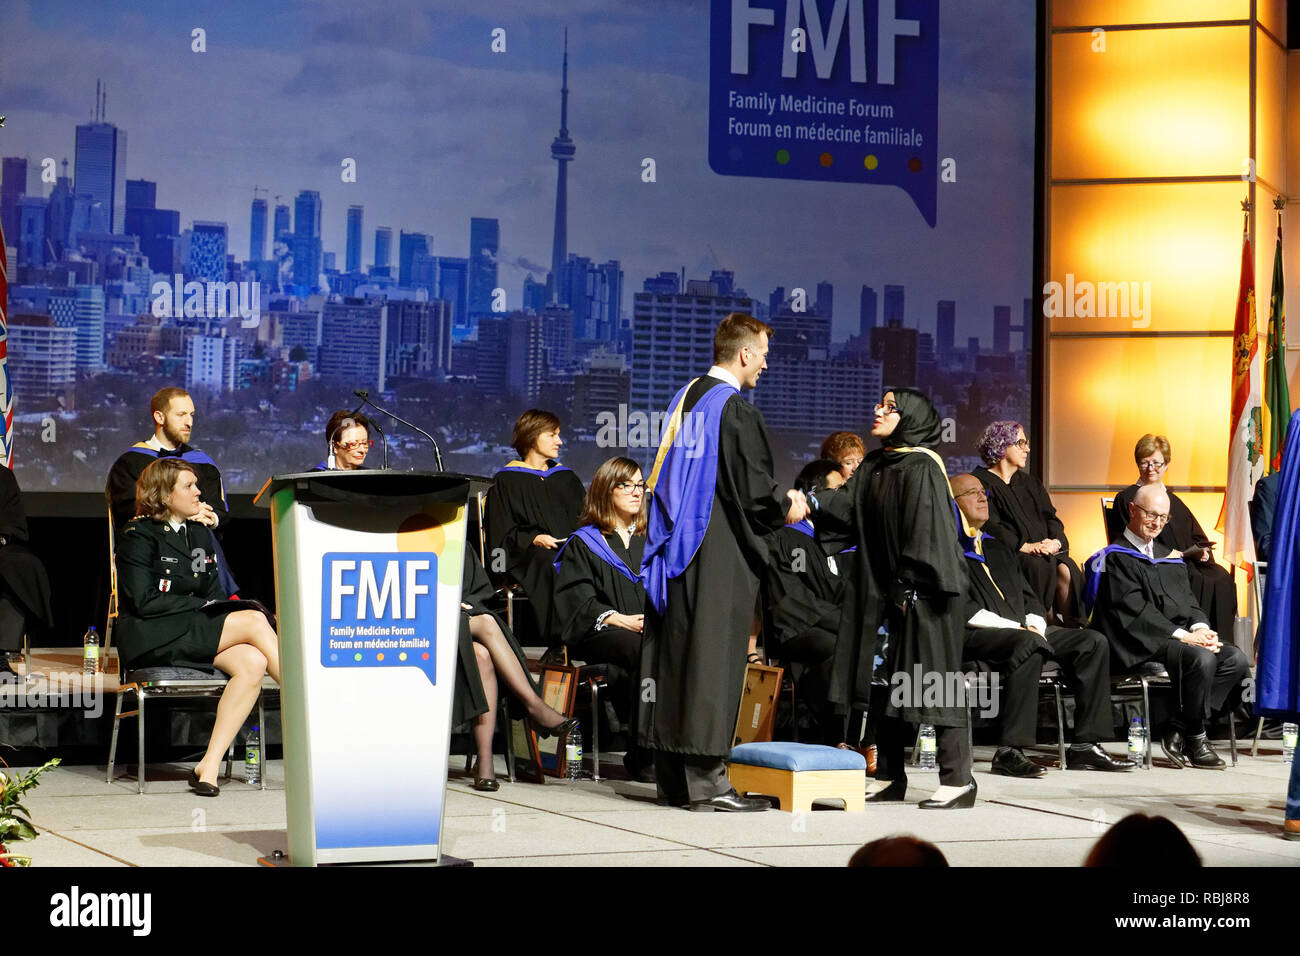 Les étudiants de médecine diplômés de recevoir leurs certificats de médecin au Forum en médecine familiale à Toronto, novembre 2018 Banque D'Images